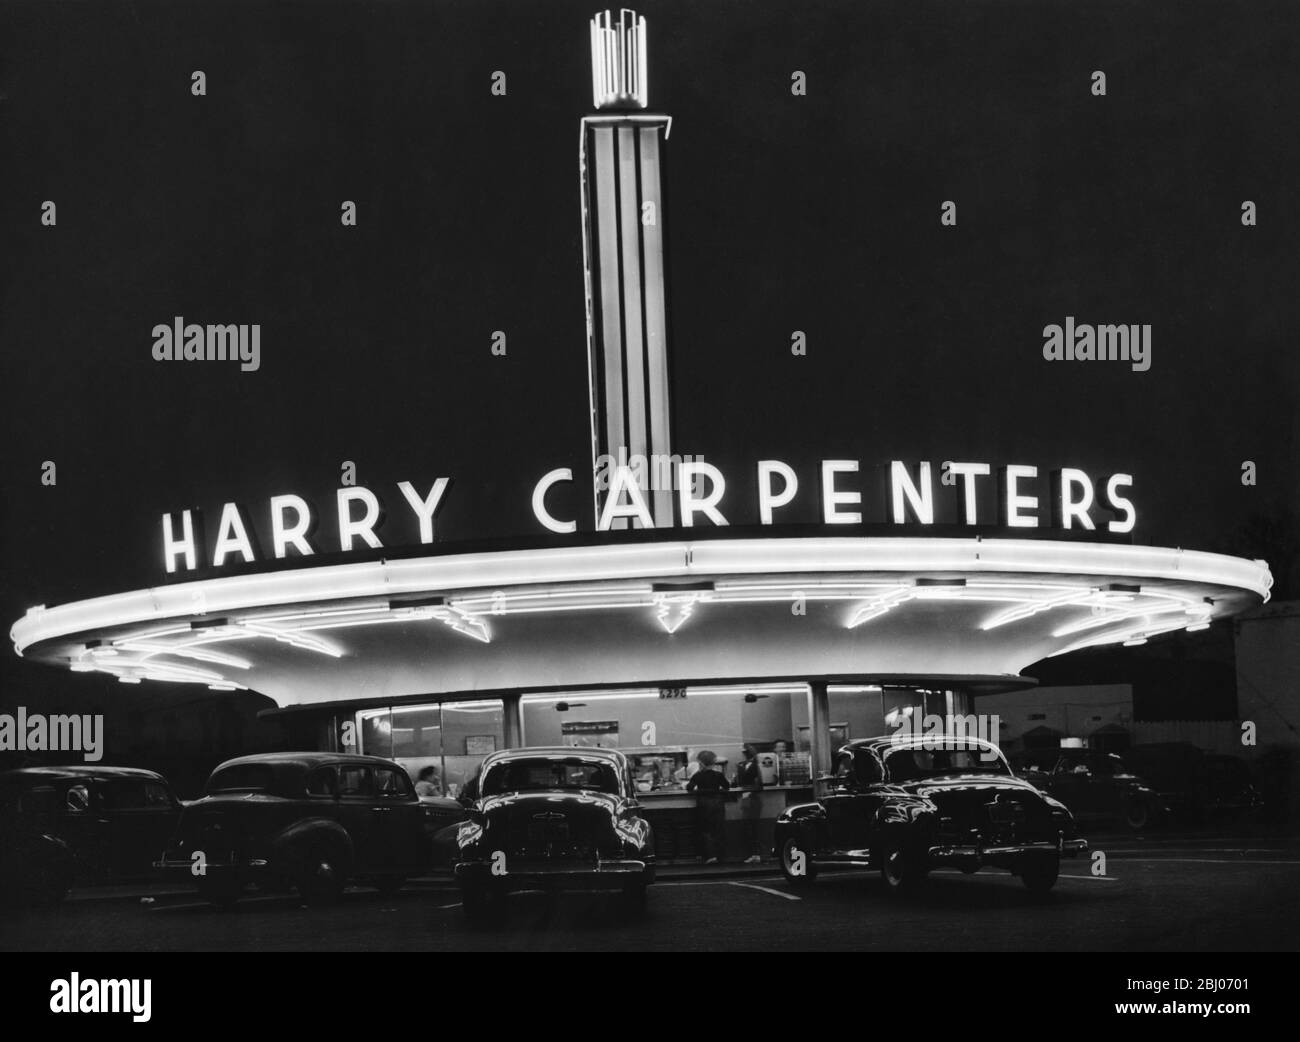 All'angolo tra Sunshine Boulevard e Vine Street di Hollywood, stand Harry Carpenters Drive-in , che offrono lo stesso servizio di notte sotto il neon e le luci fluorescenti Foto Stock